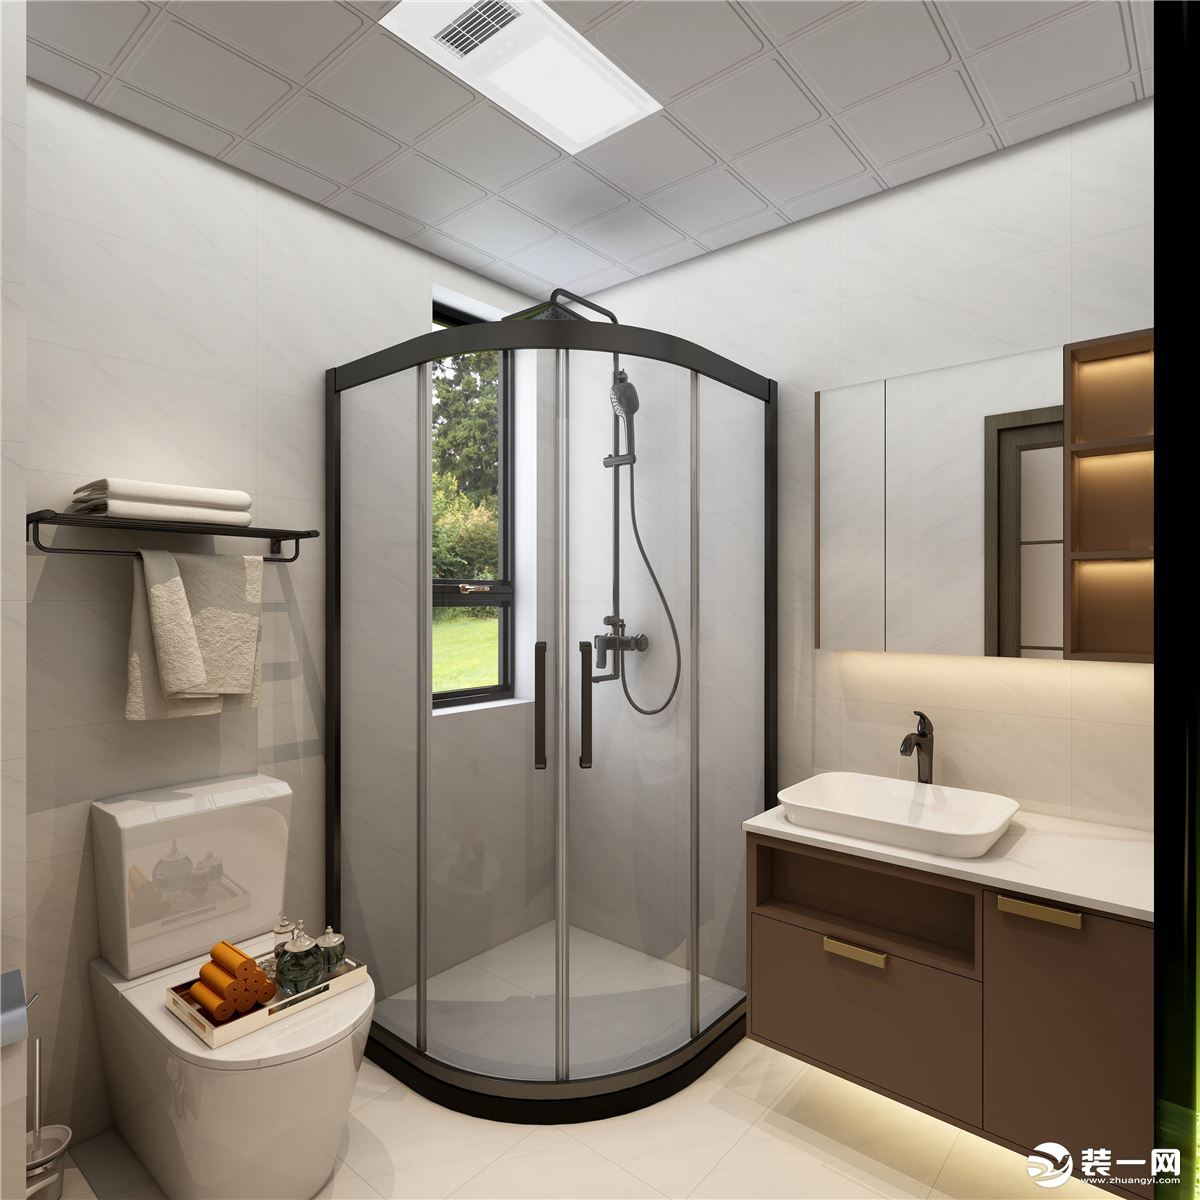 淋浴区使用了米白色瓷砖通铺，整个空间显得干净整洁。